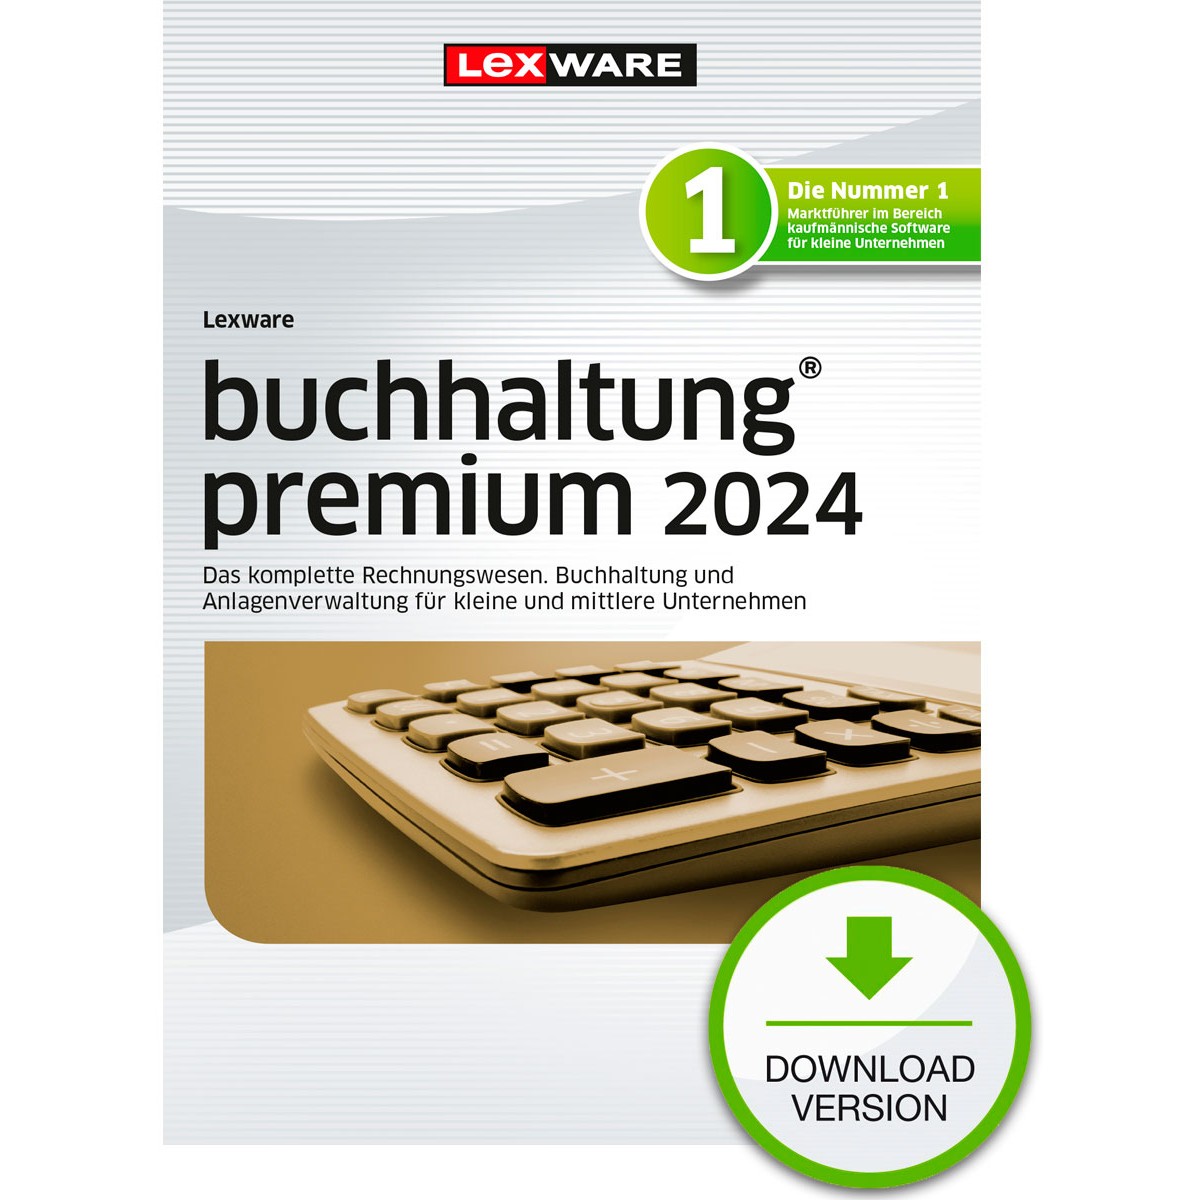 Lexware Buchhaltung Premium 2024 - 1 Devise. ABO - ESD -DownloadESD